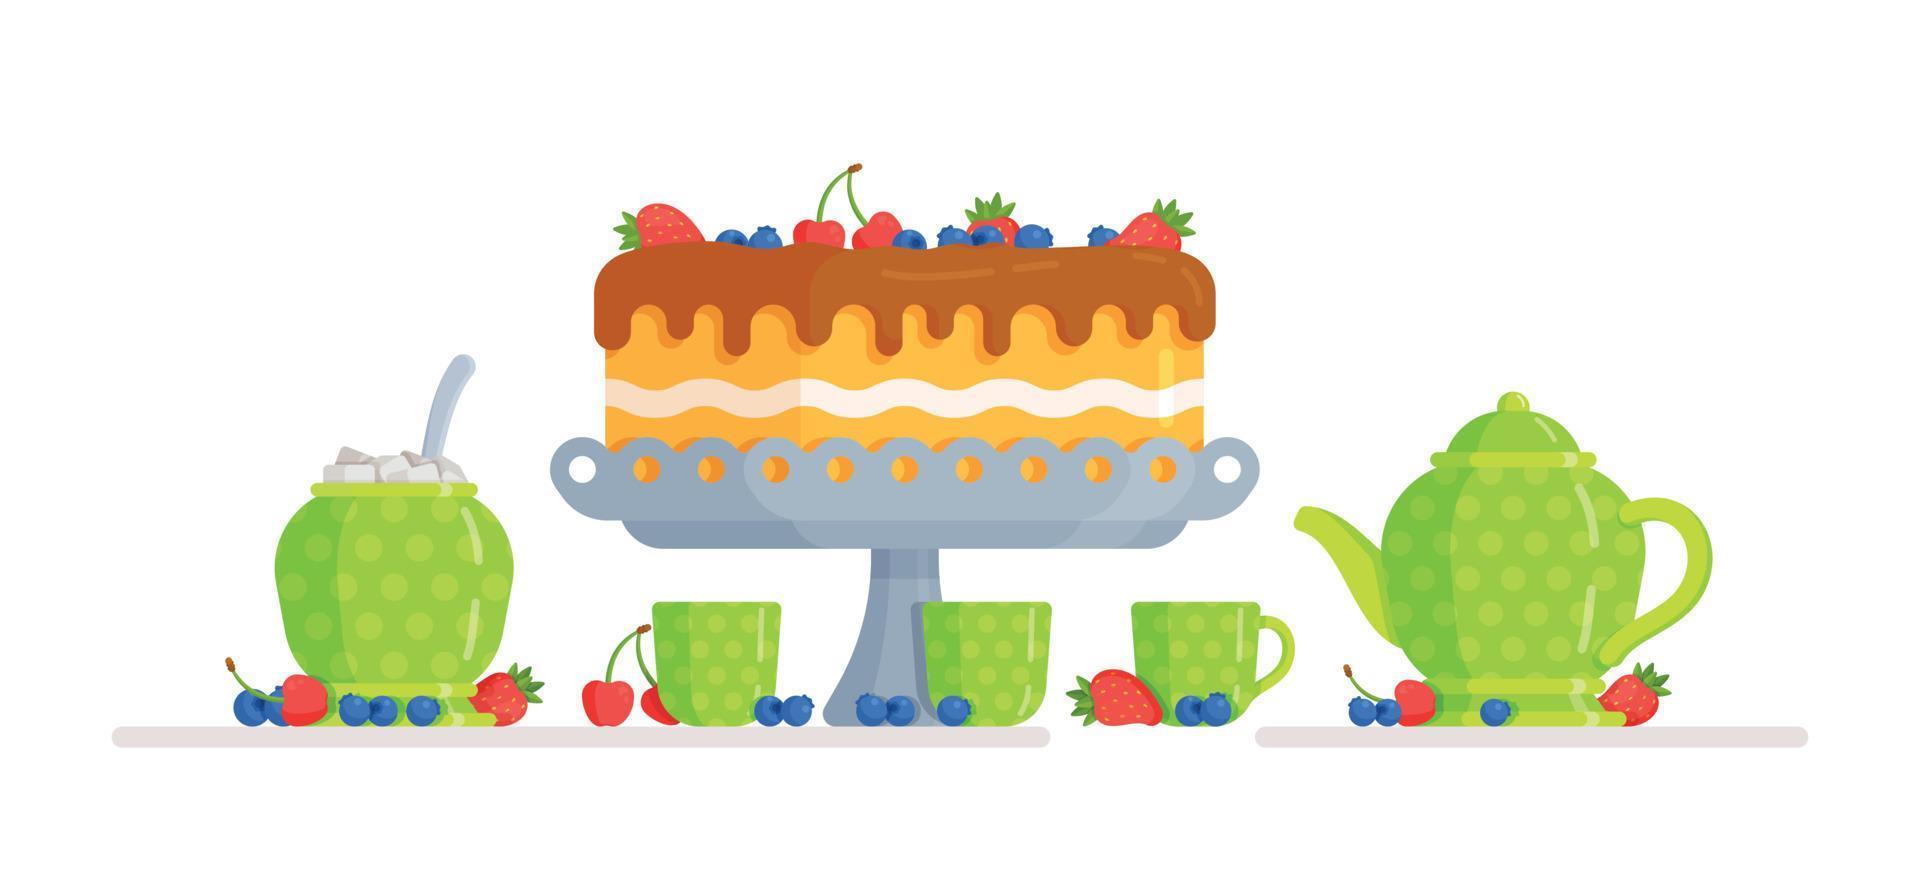 ilustração em vetor de um pequeno bolo delicioso. comemorar um aniversário ou qualquer outro feriado.